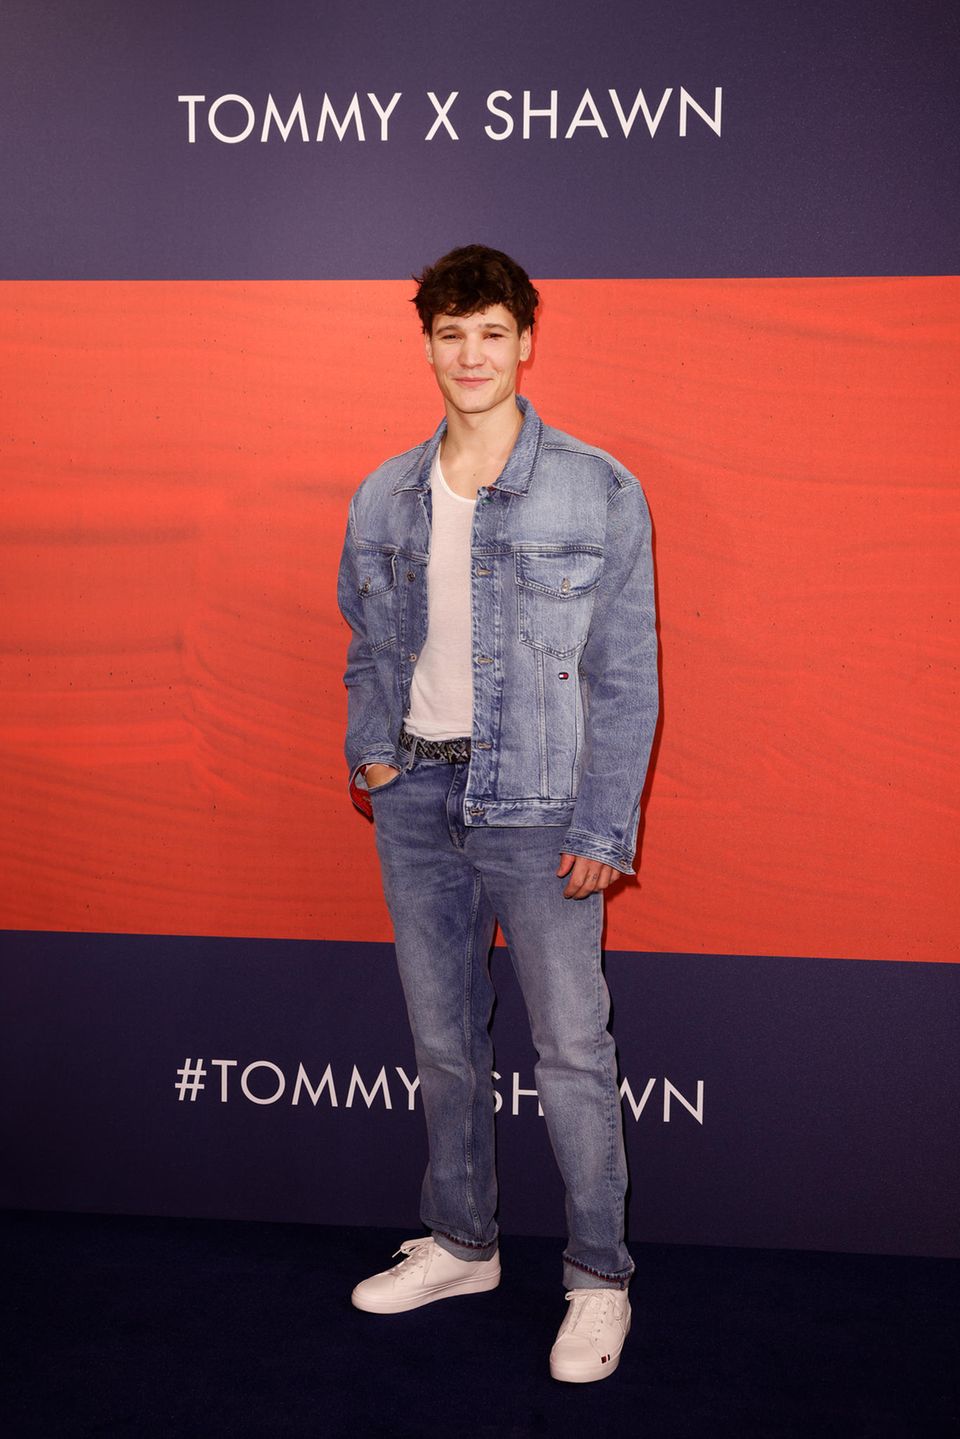 Zum Launch der "Tommy x Shawn" Kollektion kommt auch der deutsche Shawn Mendes – Wincent Weiss. Das Hilfiger-Outfit passt perfekt zu seinem lässigen Style.